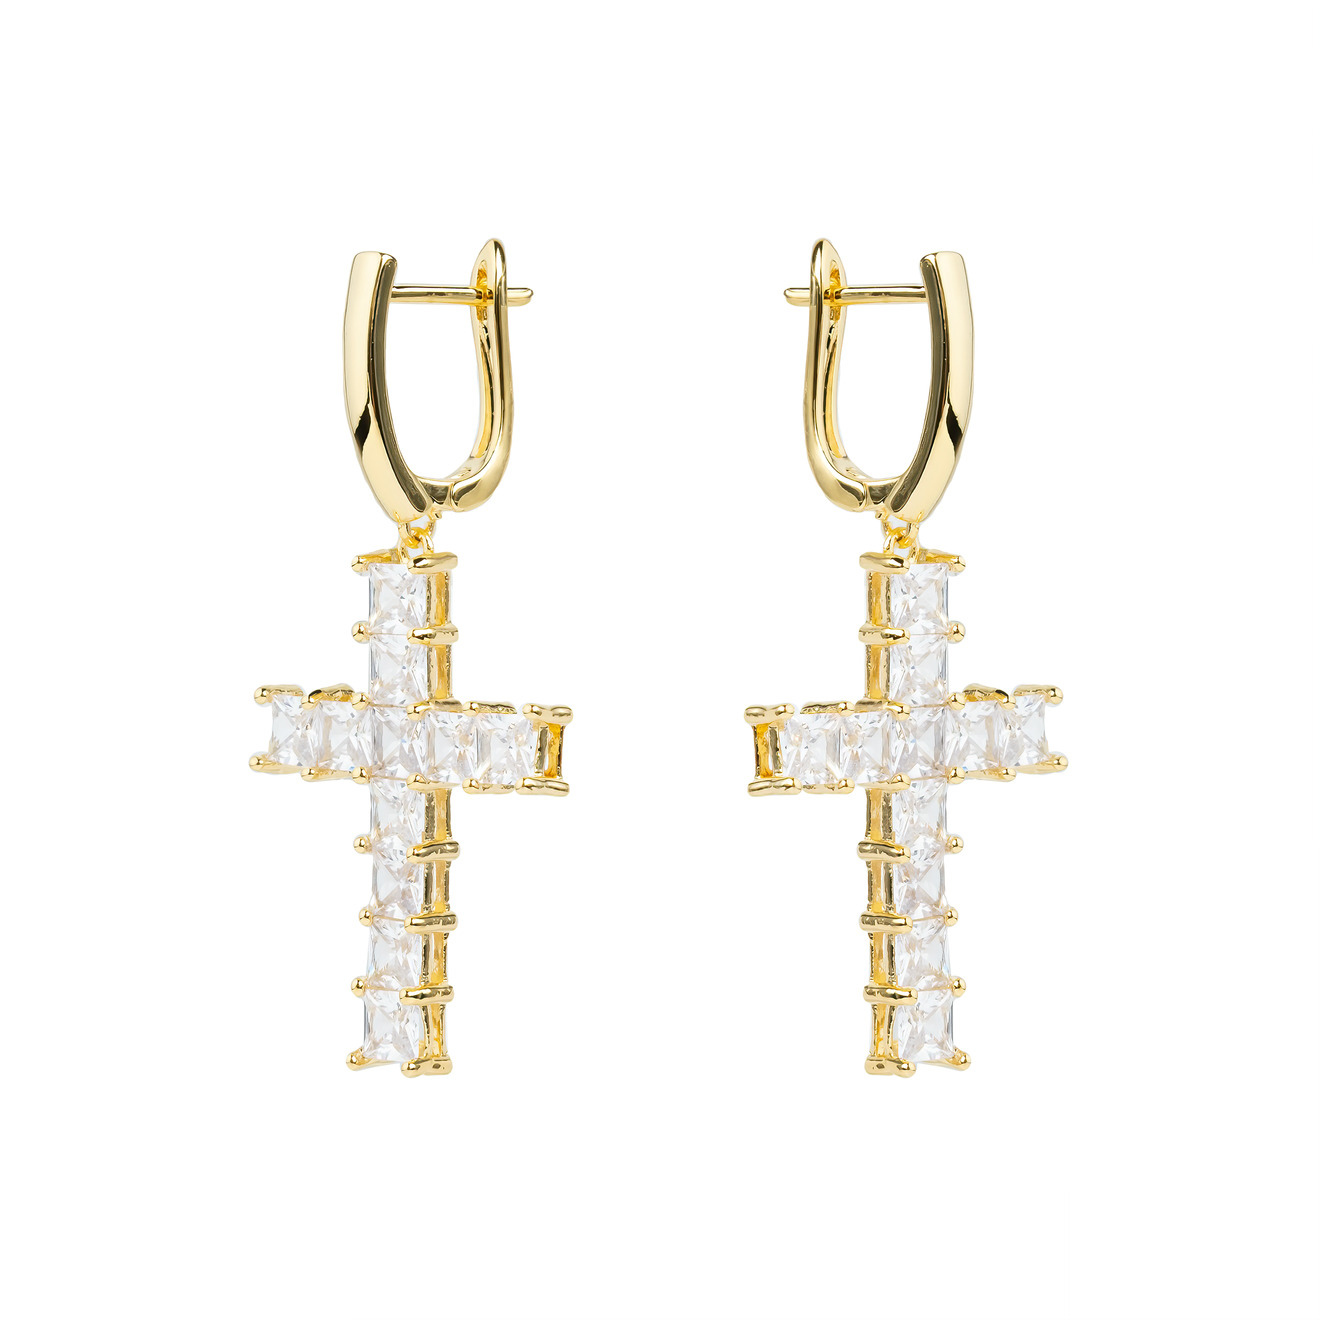 herald percy серебристые серьги кресты с кристаллами Herald Percy Золотистые серьги-кресты с кристаллами